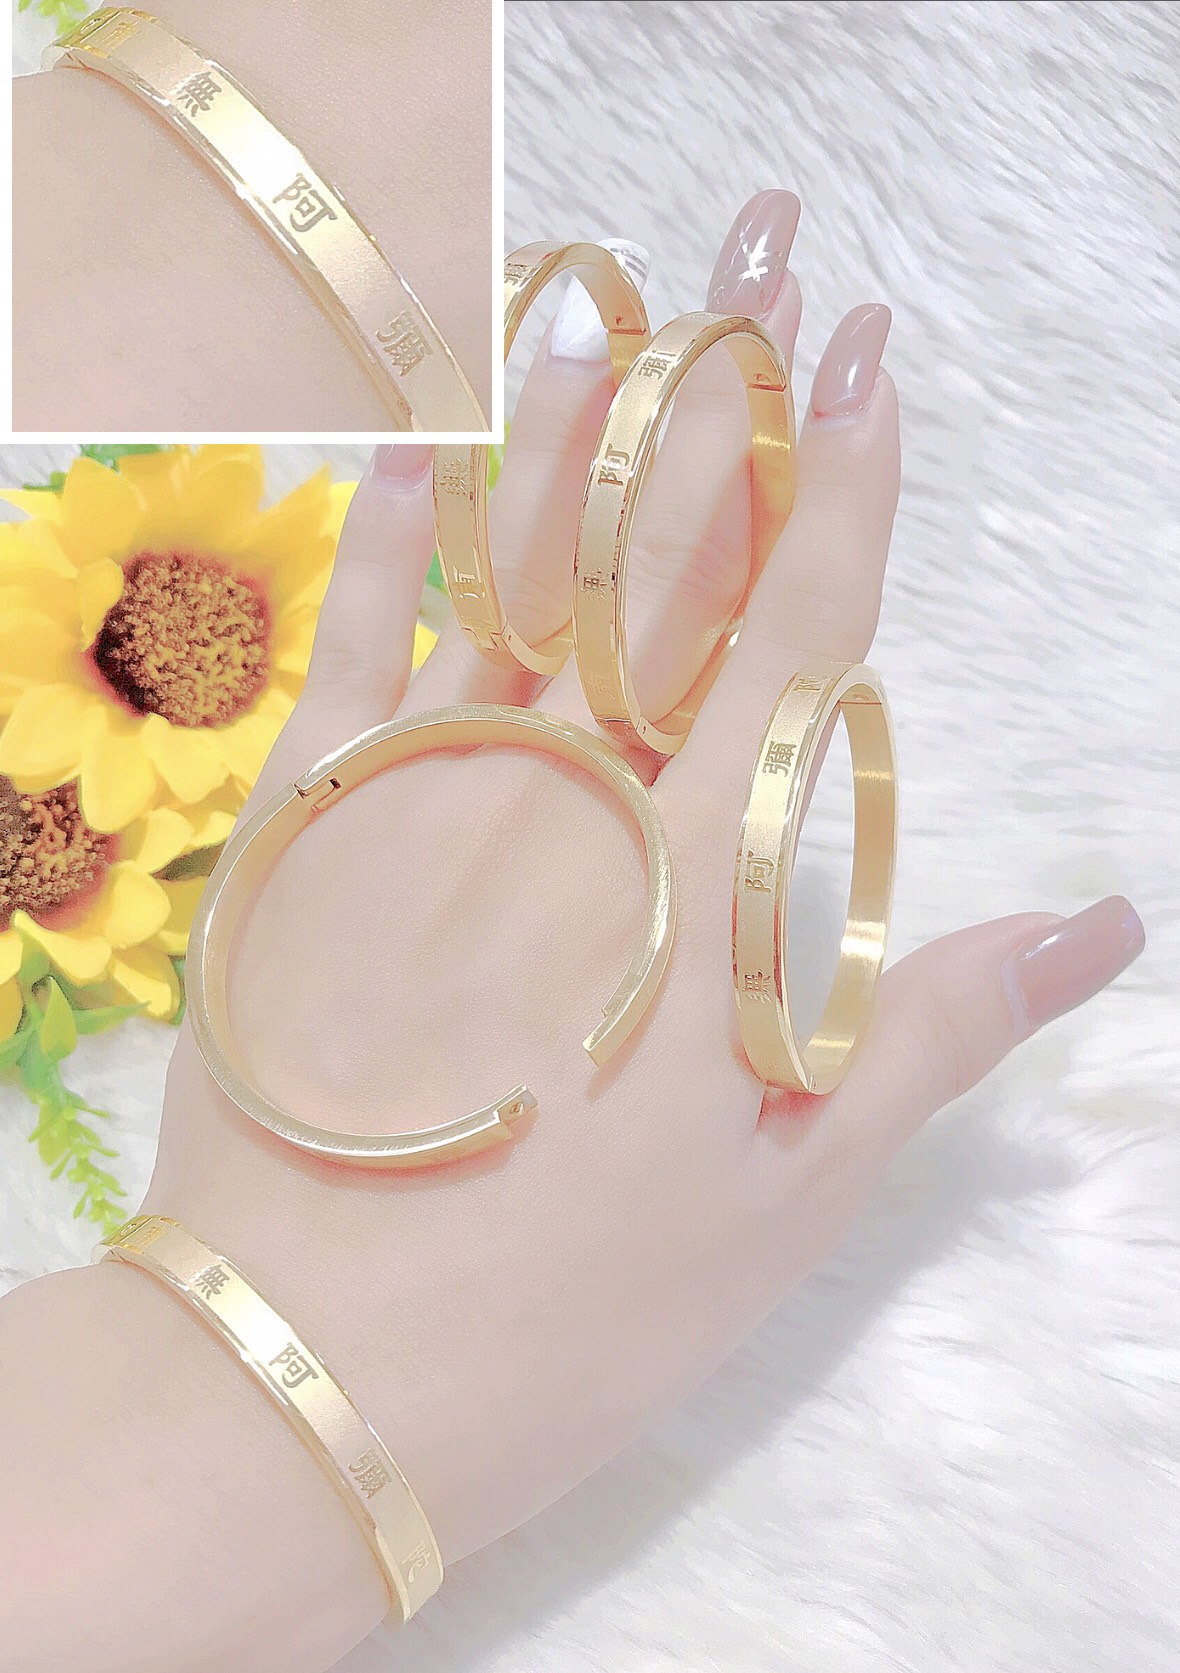 Nhẫn vàng 18k: Một chiếc nhẫn vàng 18k tinh tế và đẹp mắt sẽ trở thành món đồ trang sức giá trị cho bất kỳ ai. Với màu sắc độc đáo và sự cứng cáp, những chiếc nhẫn được làm từ vàng 18k chắc chắn sẽ khiến bạn bị nghiền ngẫm. Tham gia khám phá hình ảnh những chiếc nhẫn vàng rực rỡ này.